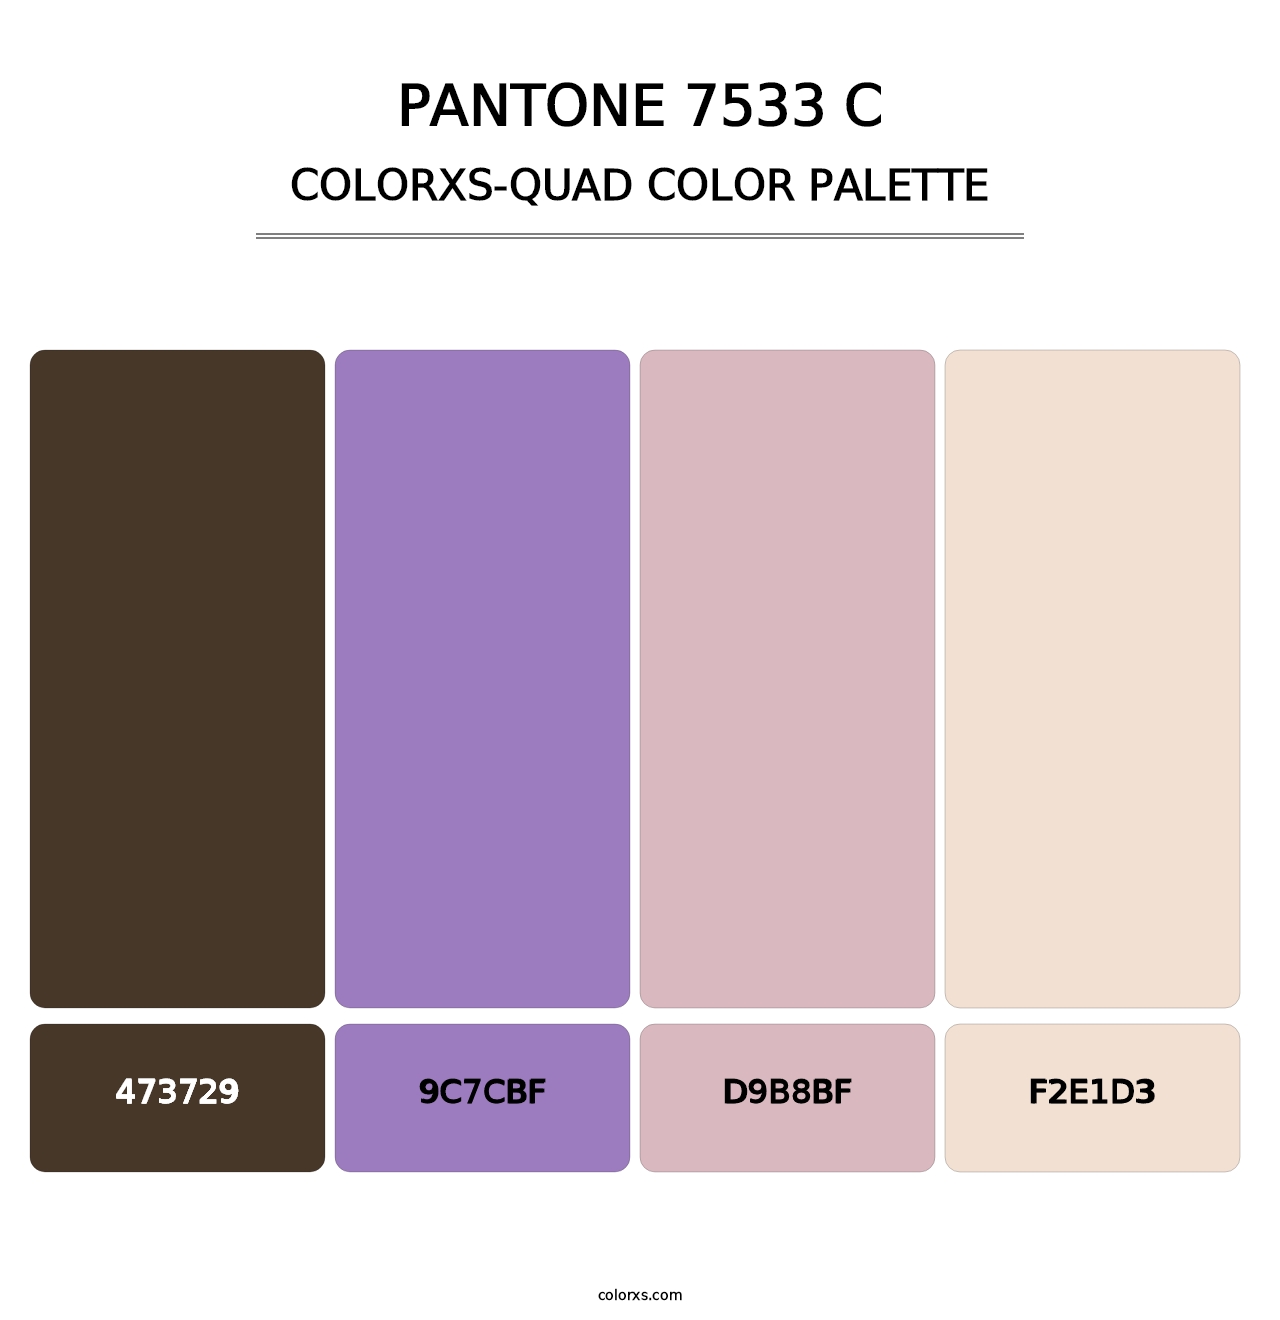 PANTONE 7533 C - Colorxs Quad Palette